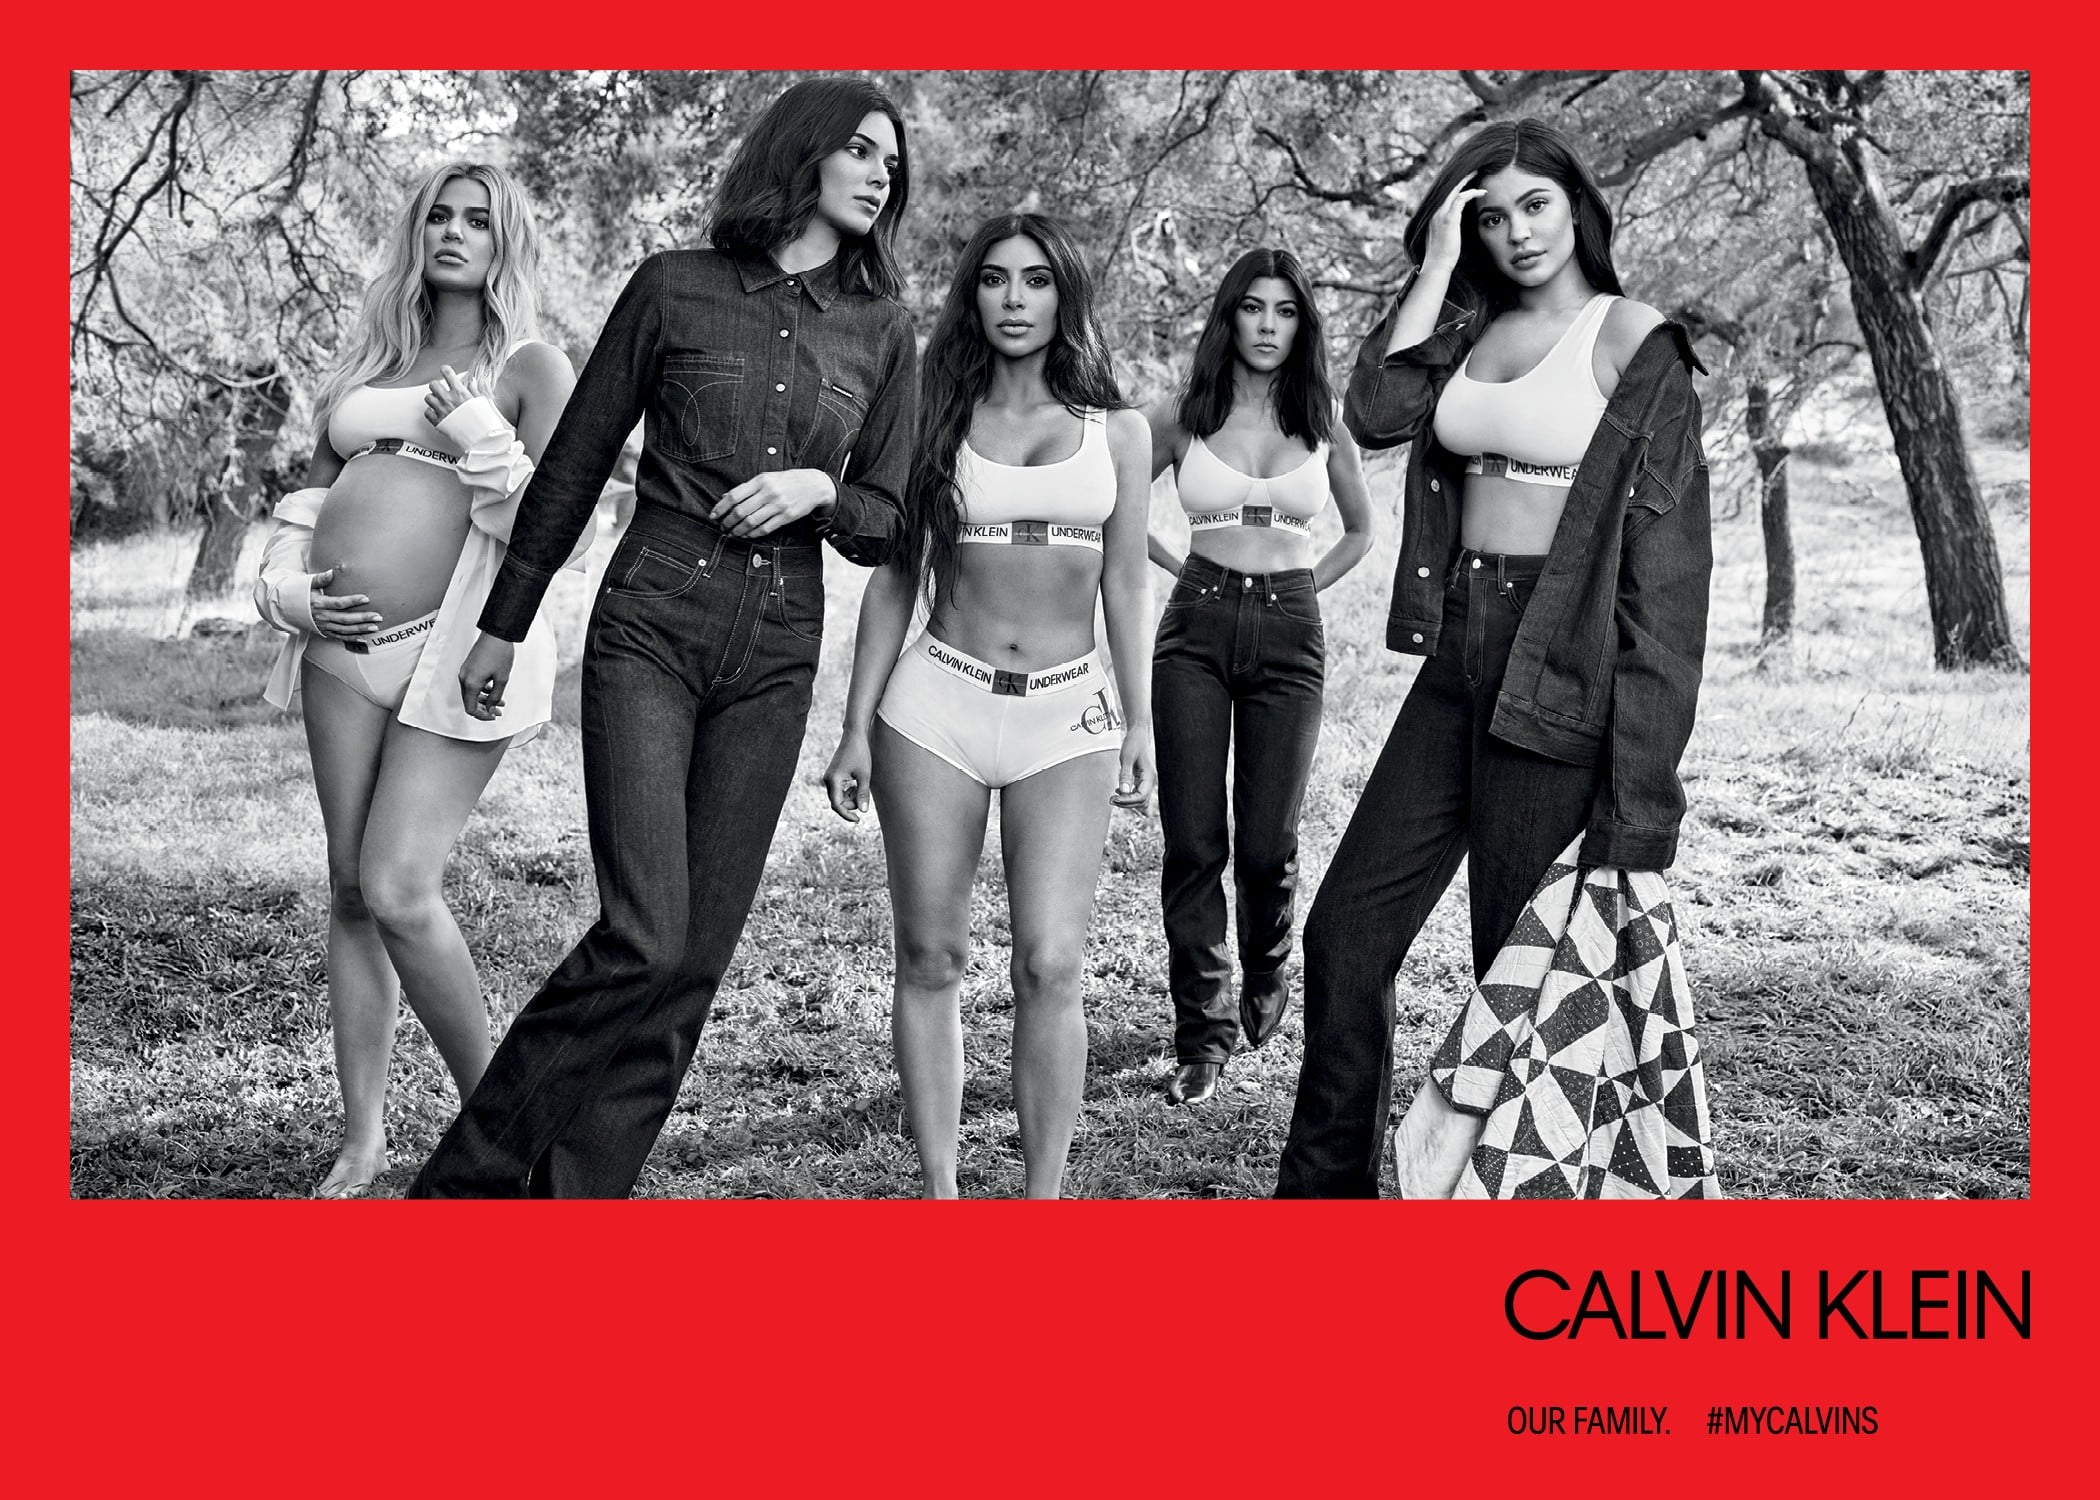 Calvin Klein - Matching in #MYCALVINS = Relationship goals